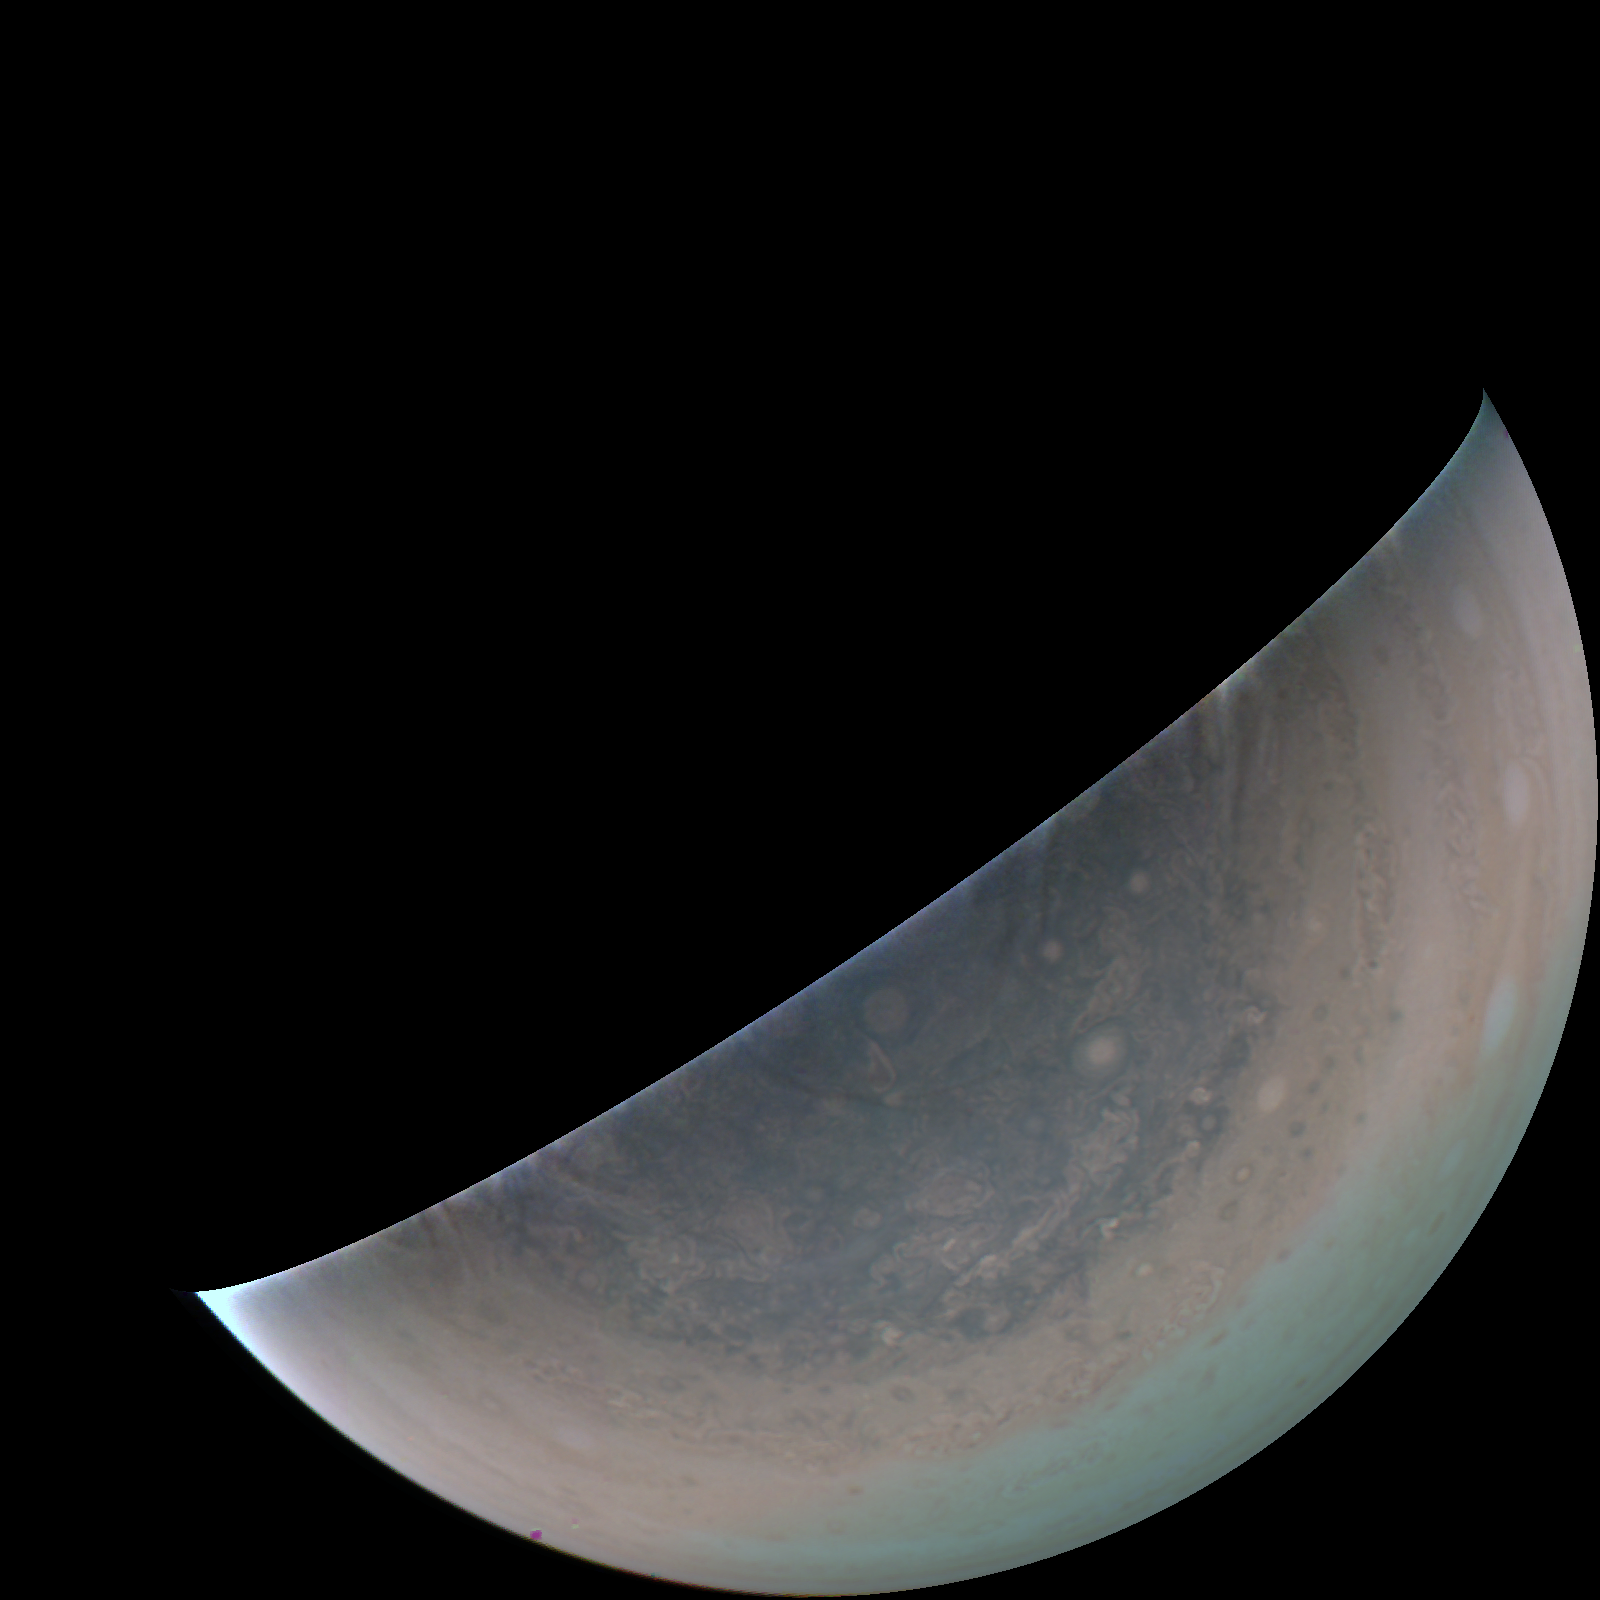 A Juno űrszonda által készített felvétel a Jupiterről.